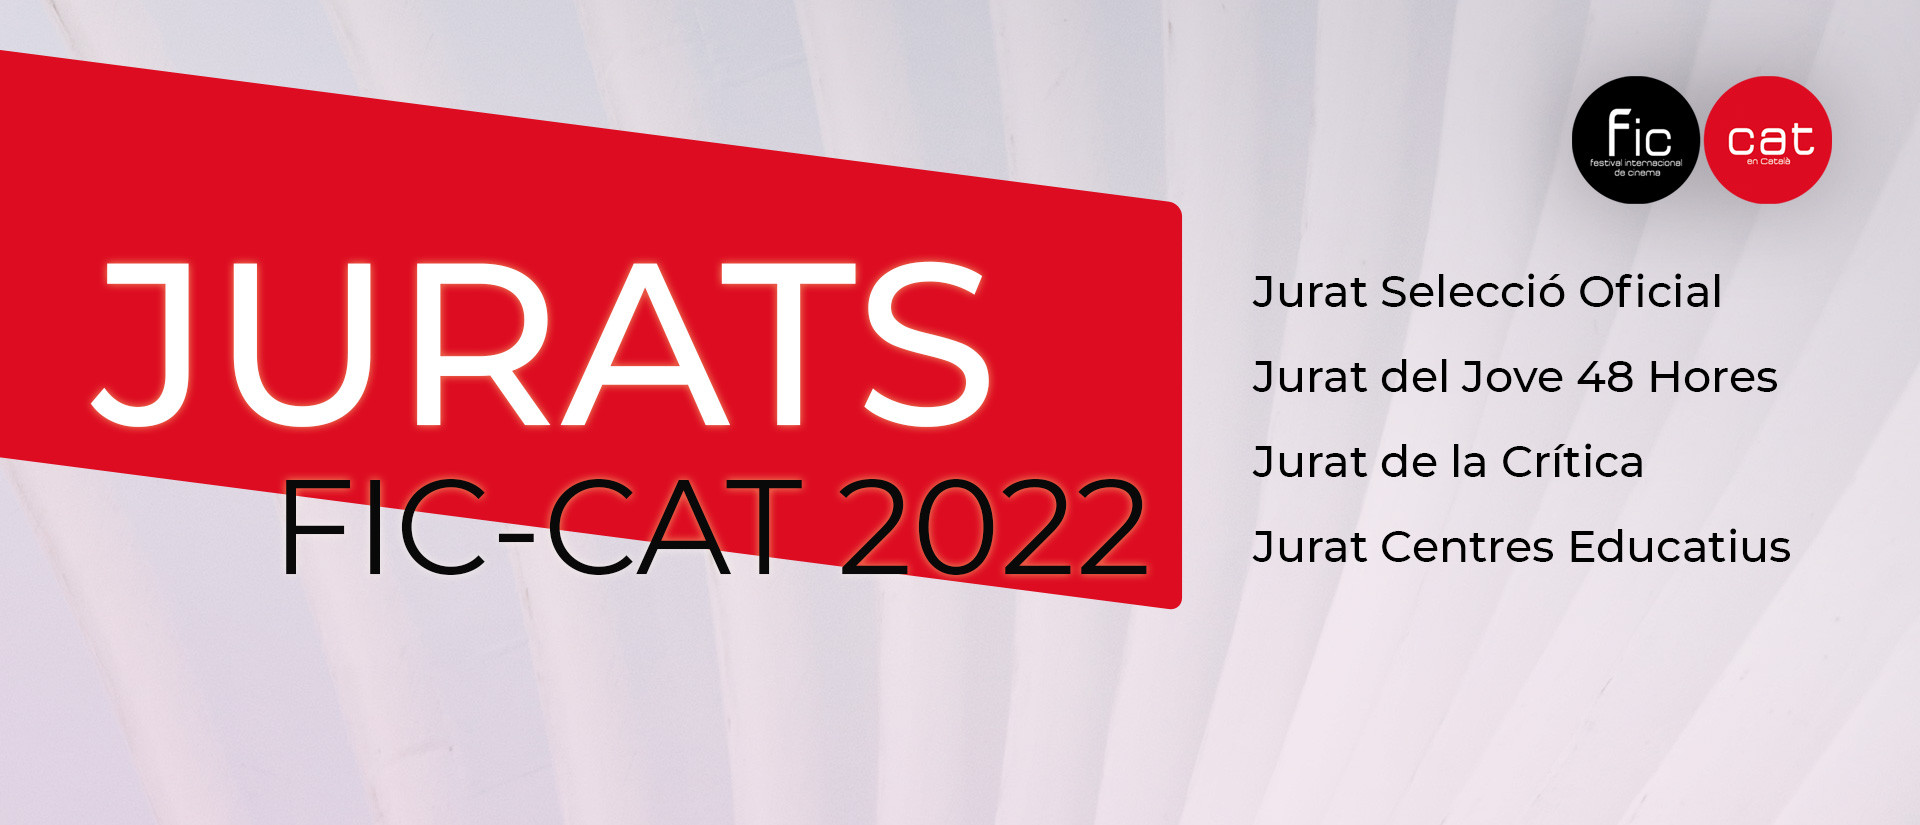 Els Jurats del FIC-CAT 2022